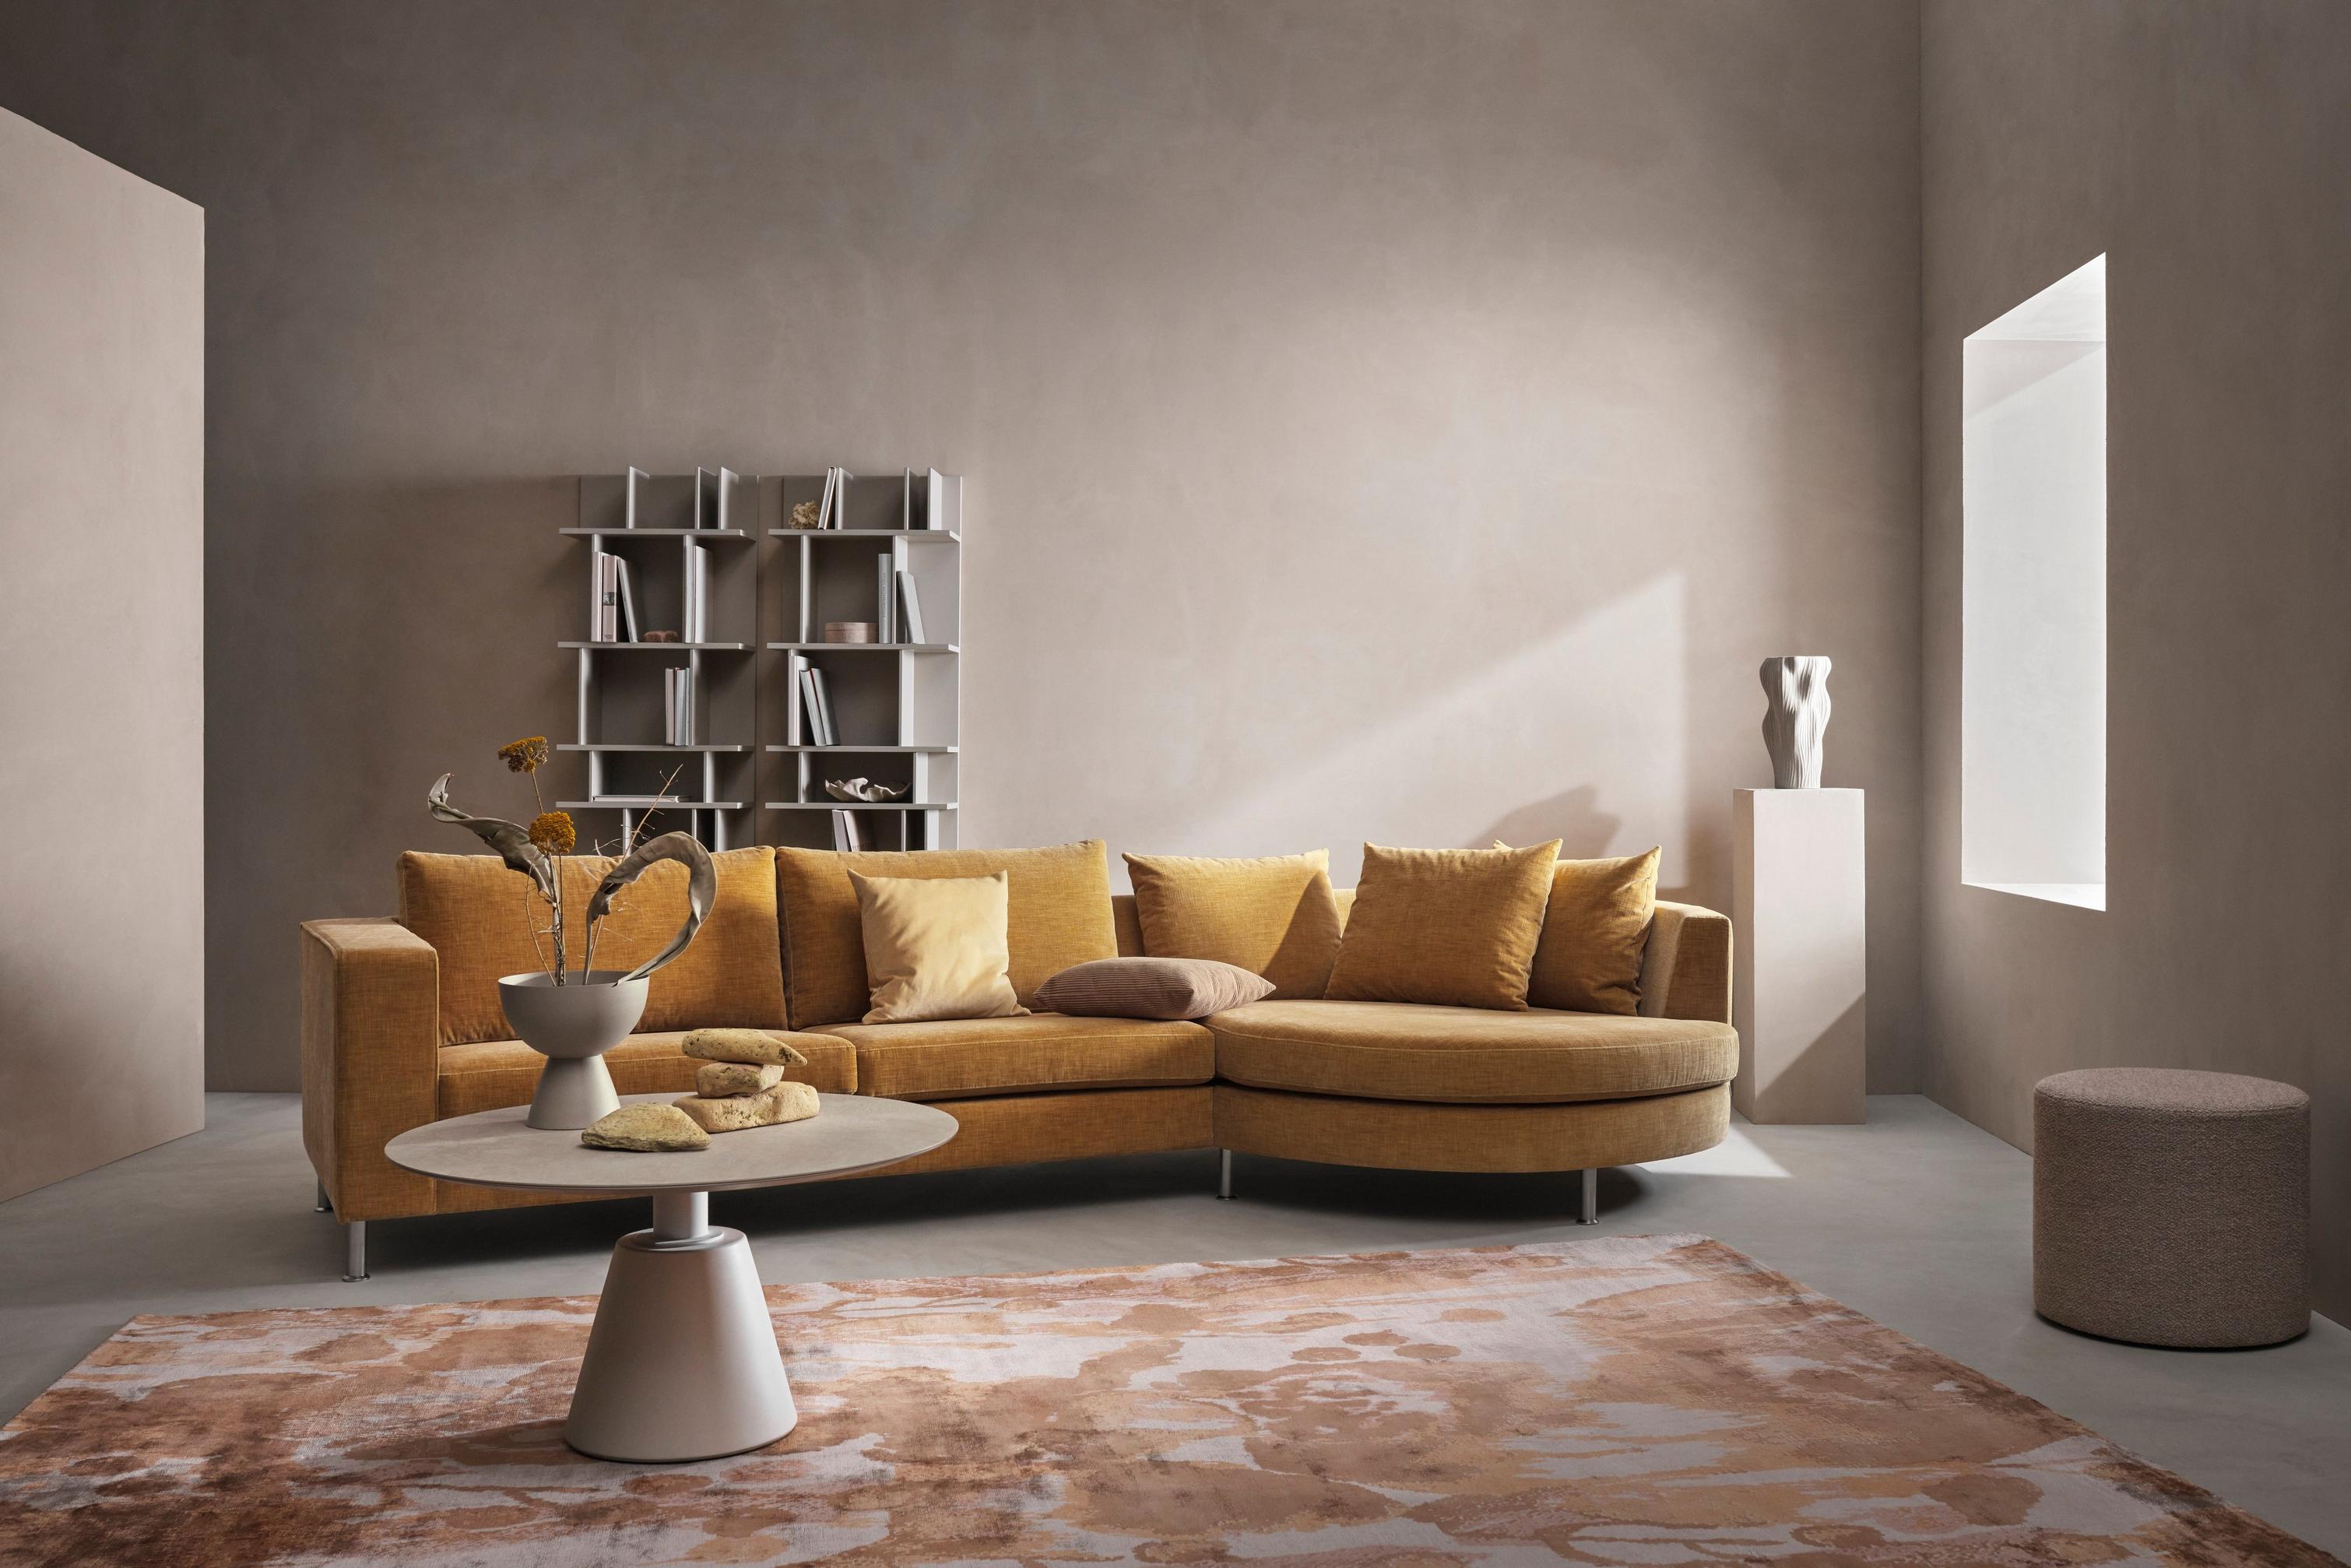 黄金米色 Napoli 面料带圆形倚靠式单元 Indivi 沙发，搭配 Eden 脚凳和 Madrid 咖啡桌。